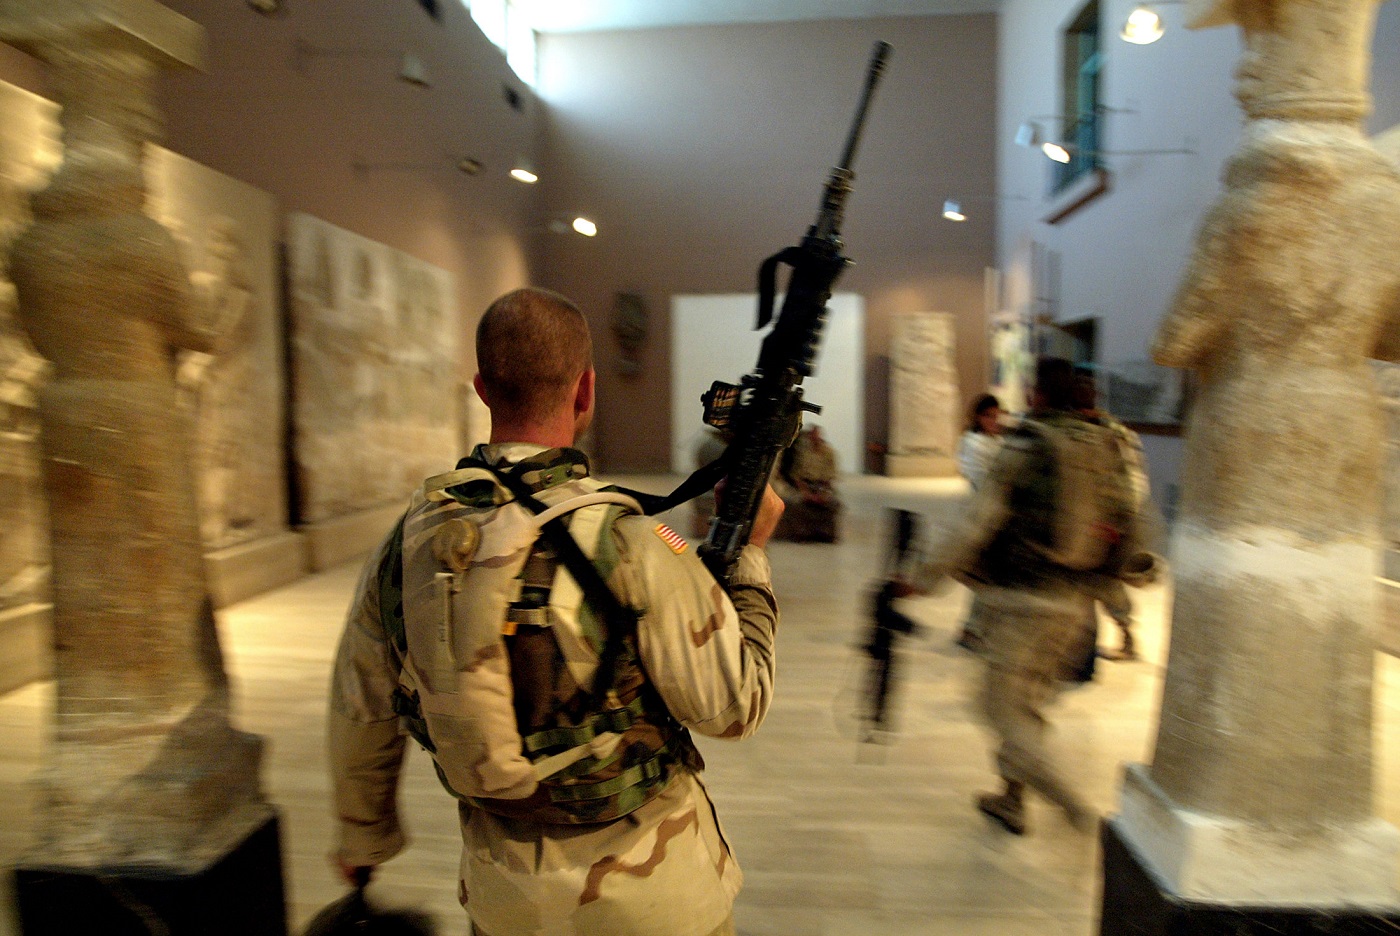 Deux soldats américains de la 1e division patrouillent dans le musée national d’Irak à Bagdad en septembre 2003 (AFP)